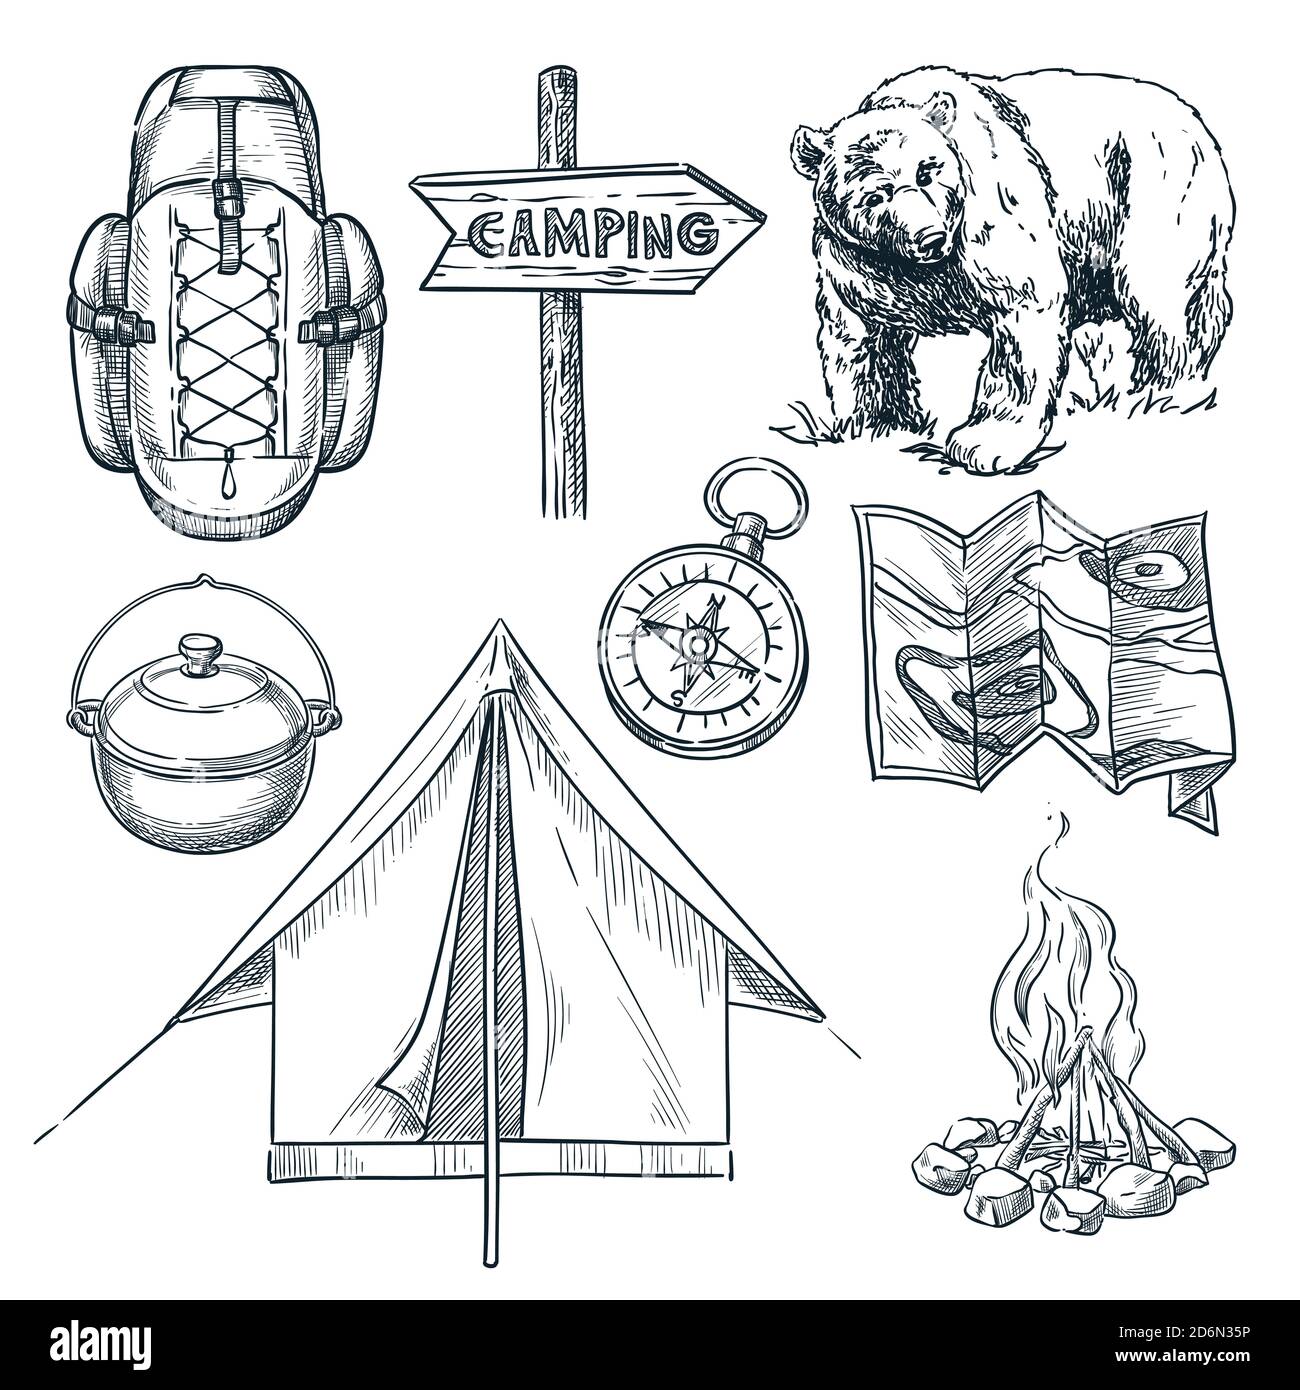 Camping Vektor Skizze Illustration. Camp Stuff Design-Elemente auf weißem Hintergrund isoliert. Stock Vektor